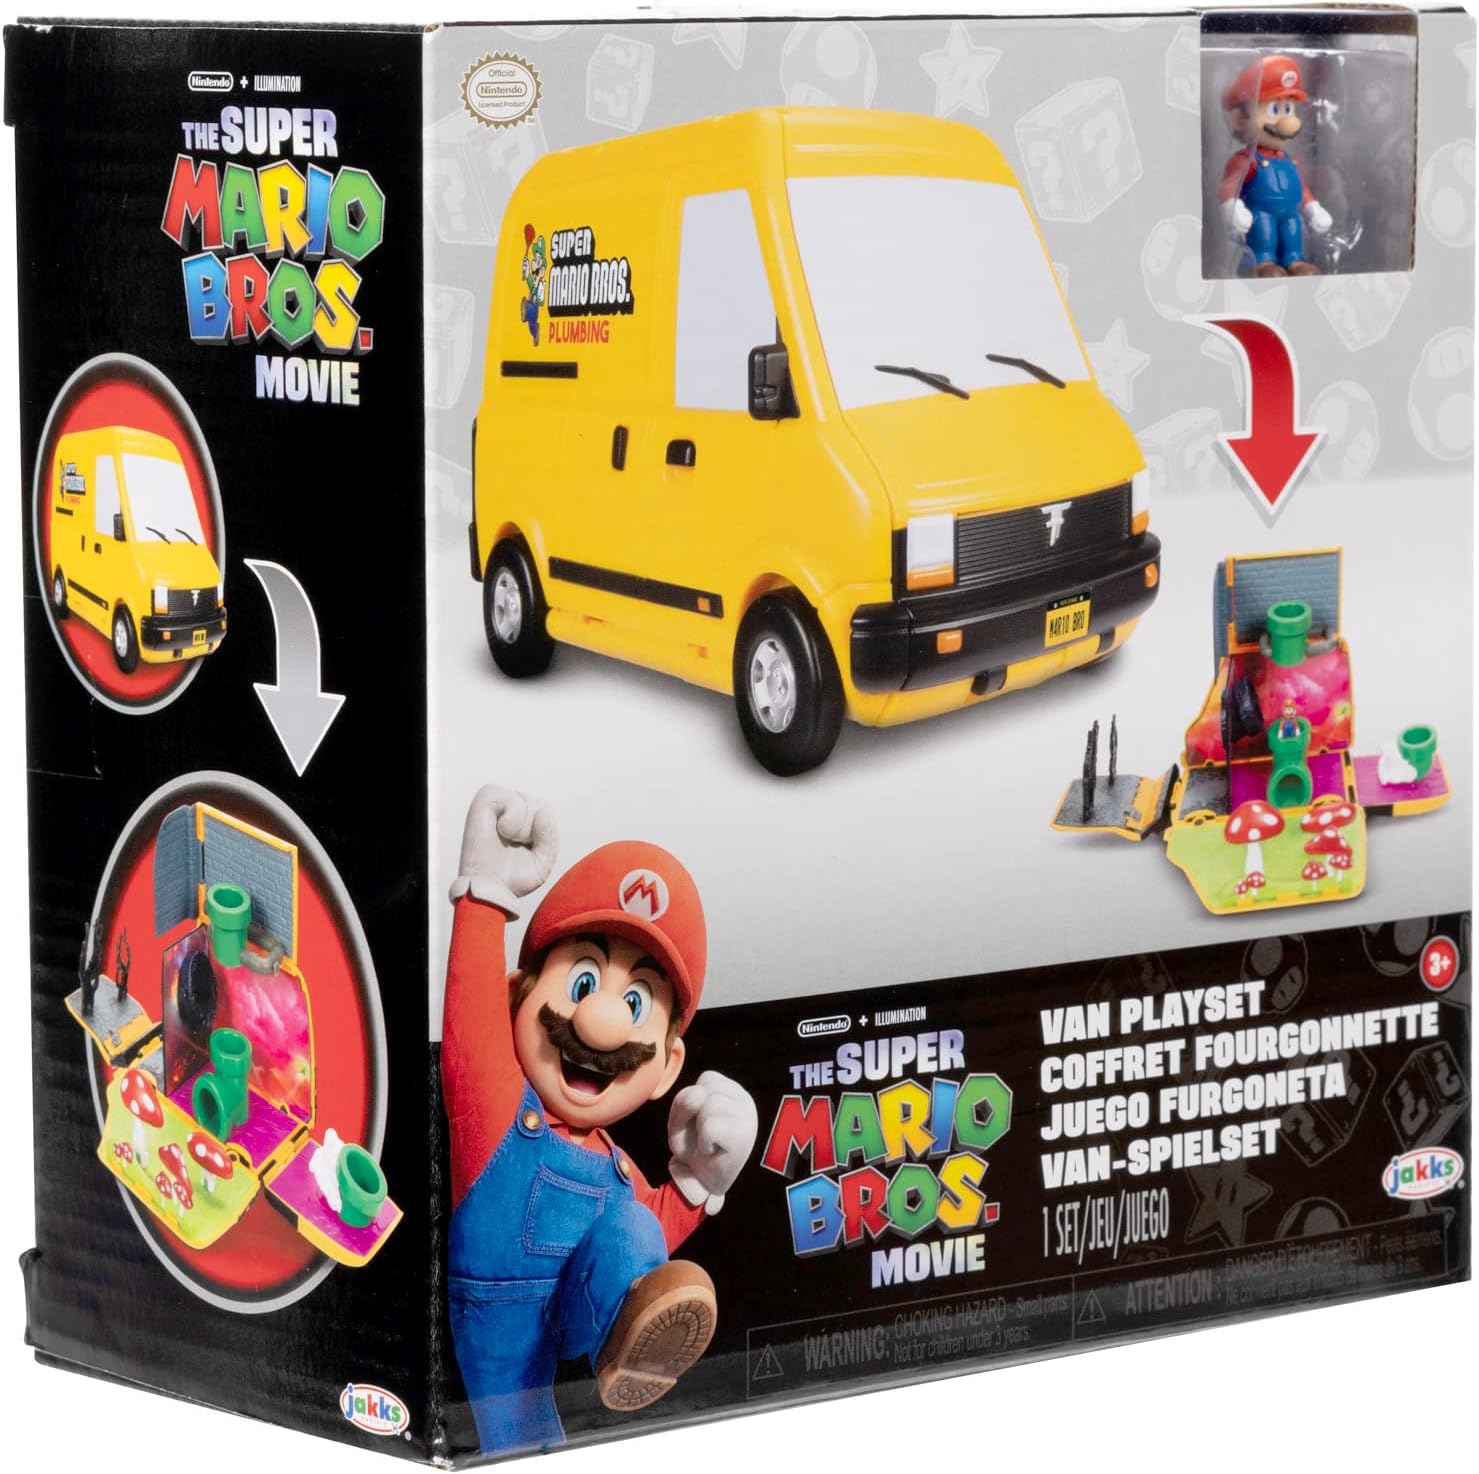 Camion Casa De Mario Bross Van Y Figura Mario